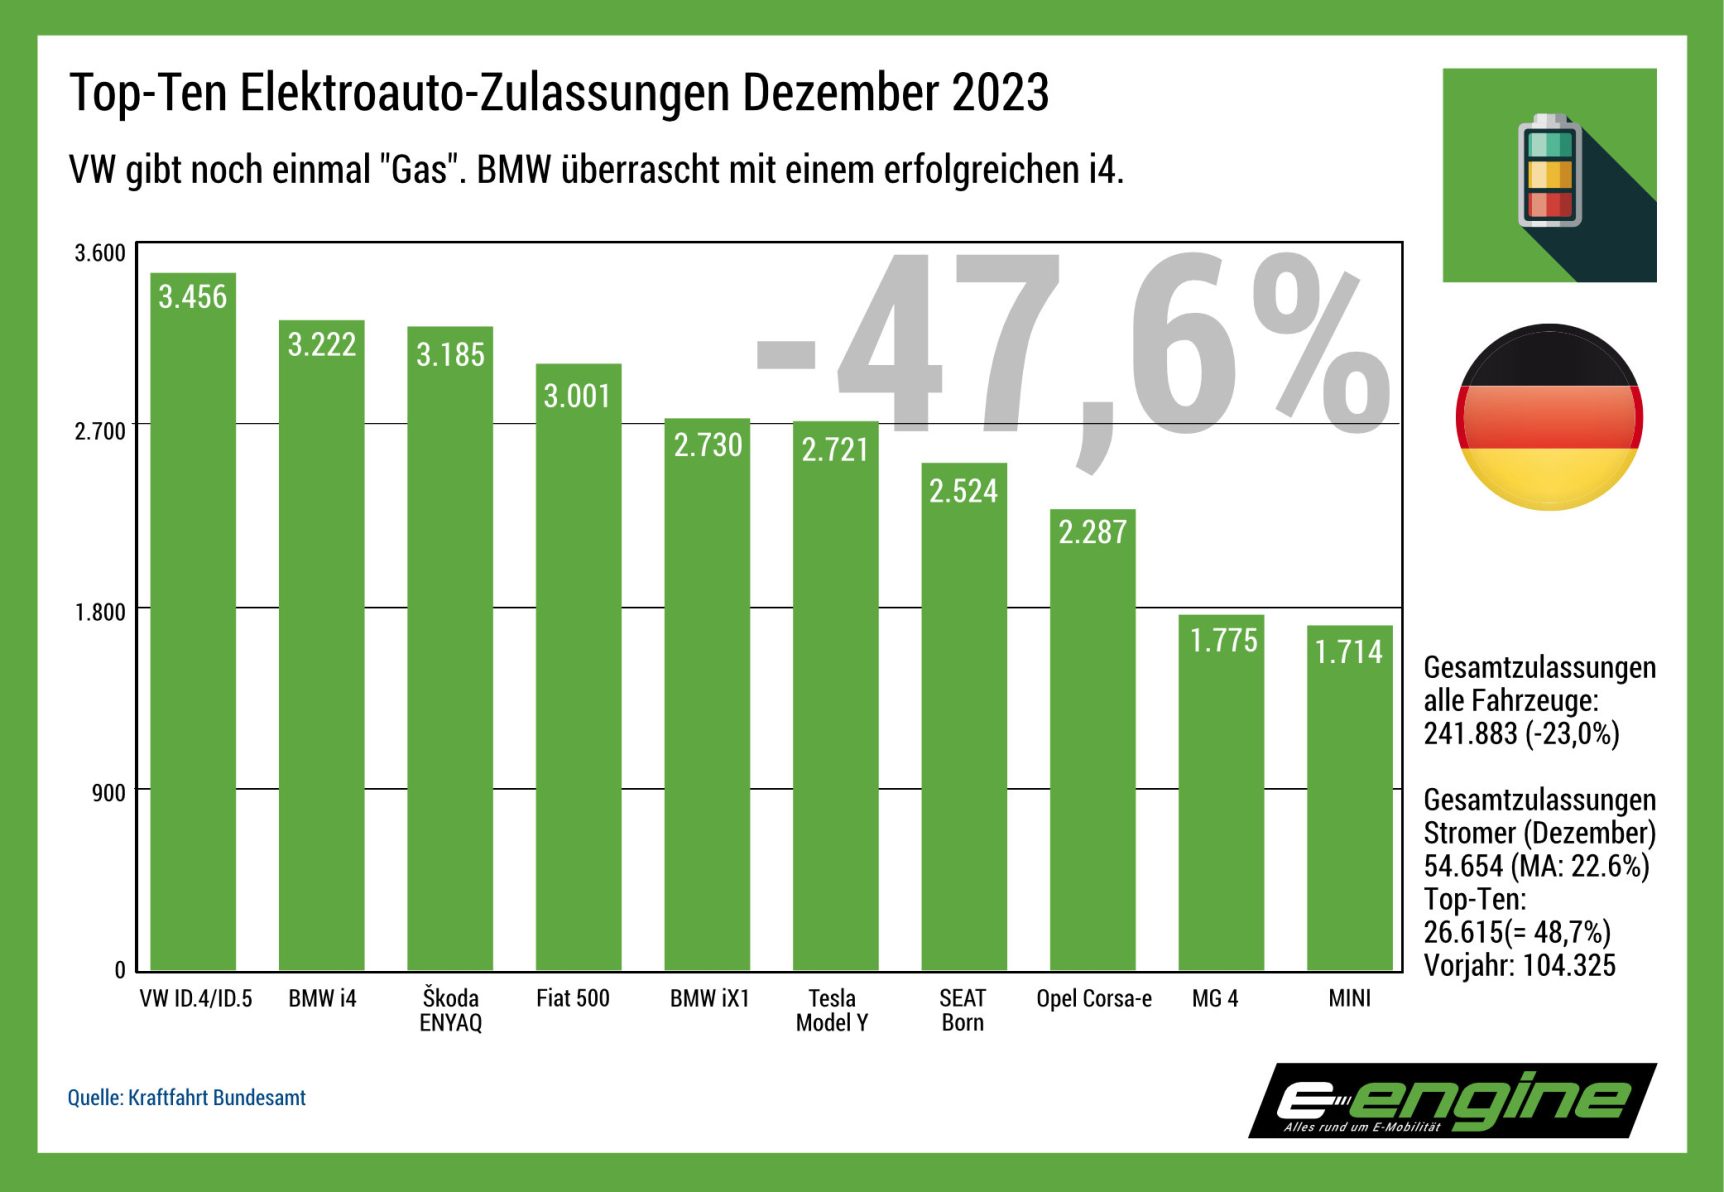 Deutschland im Dezember: Jahresabschluss bei Elektrofahrzeugen weist trotz Bremsen im September und Dezember doch noch ein Plus auf.